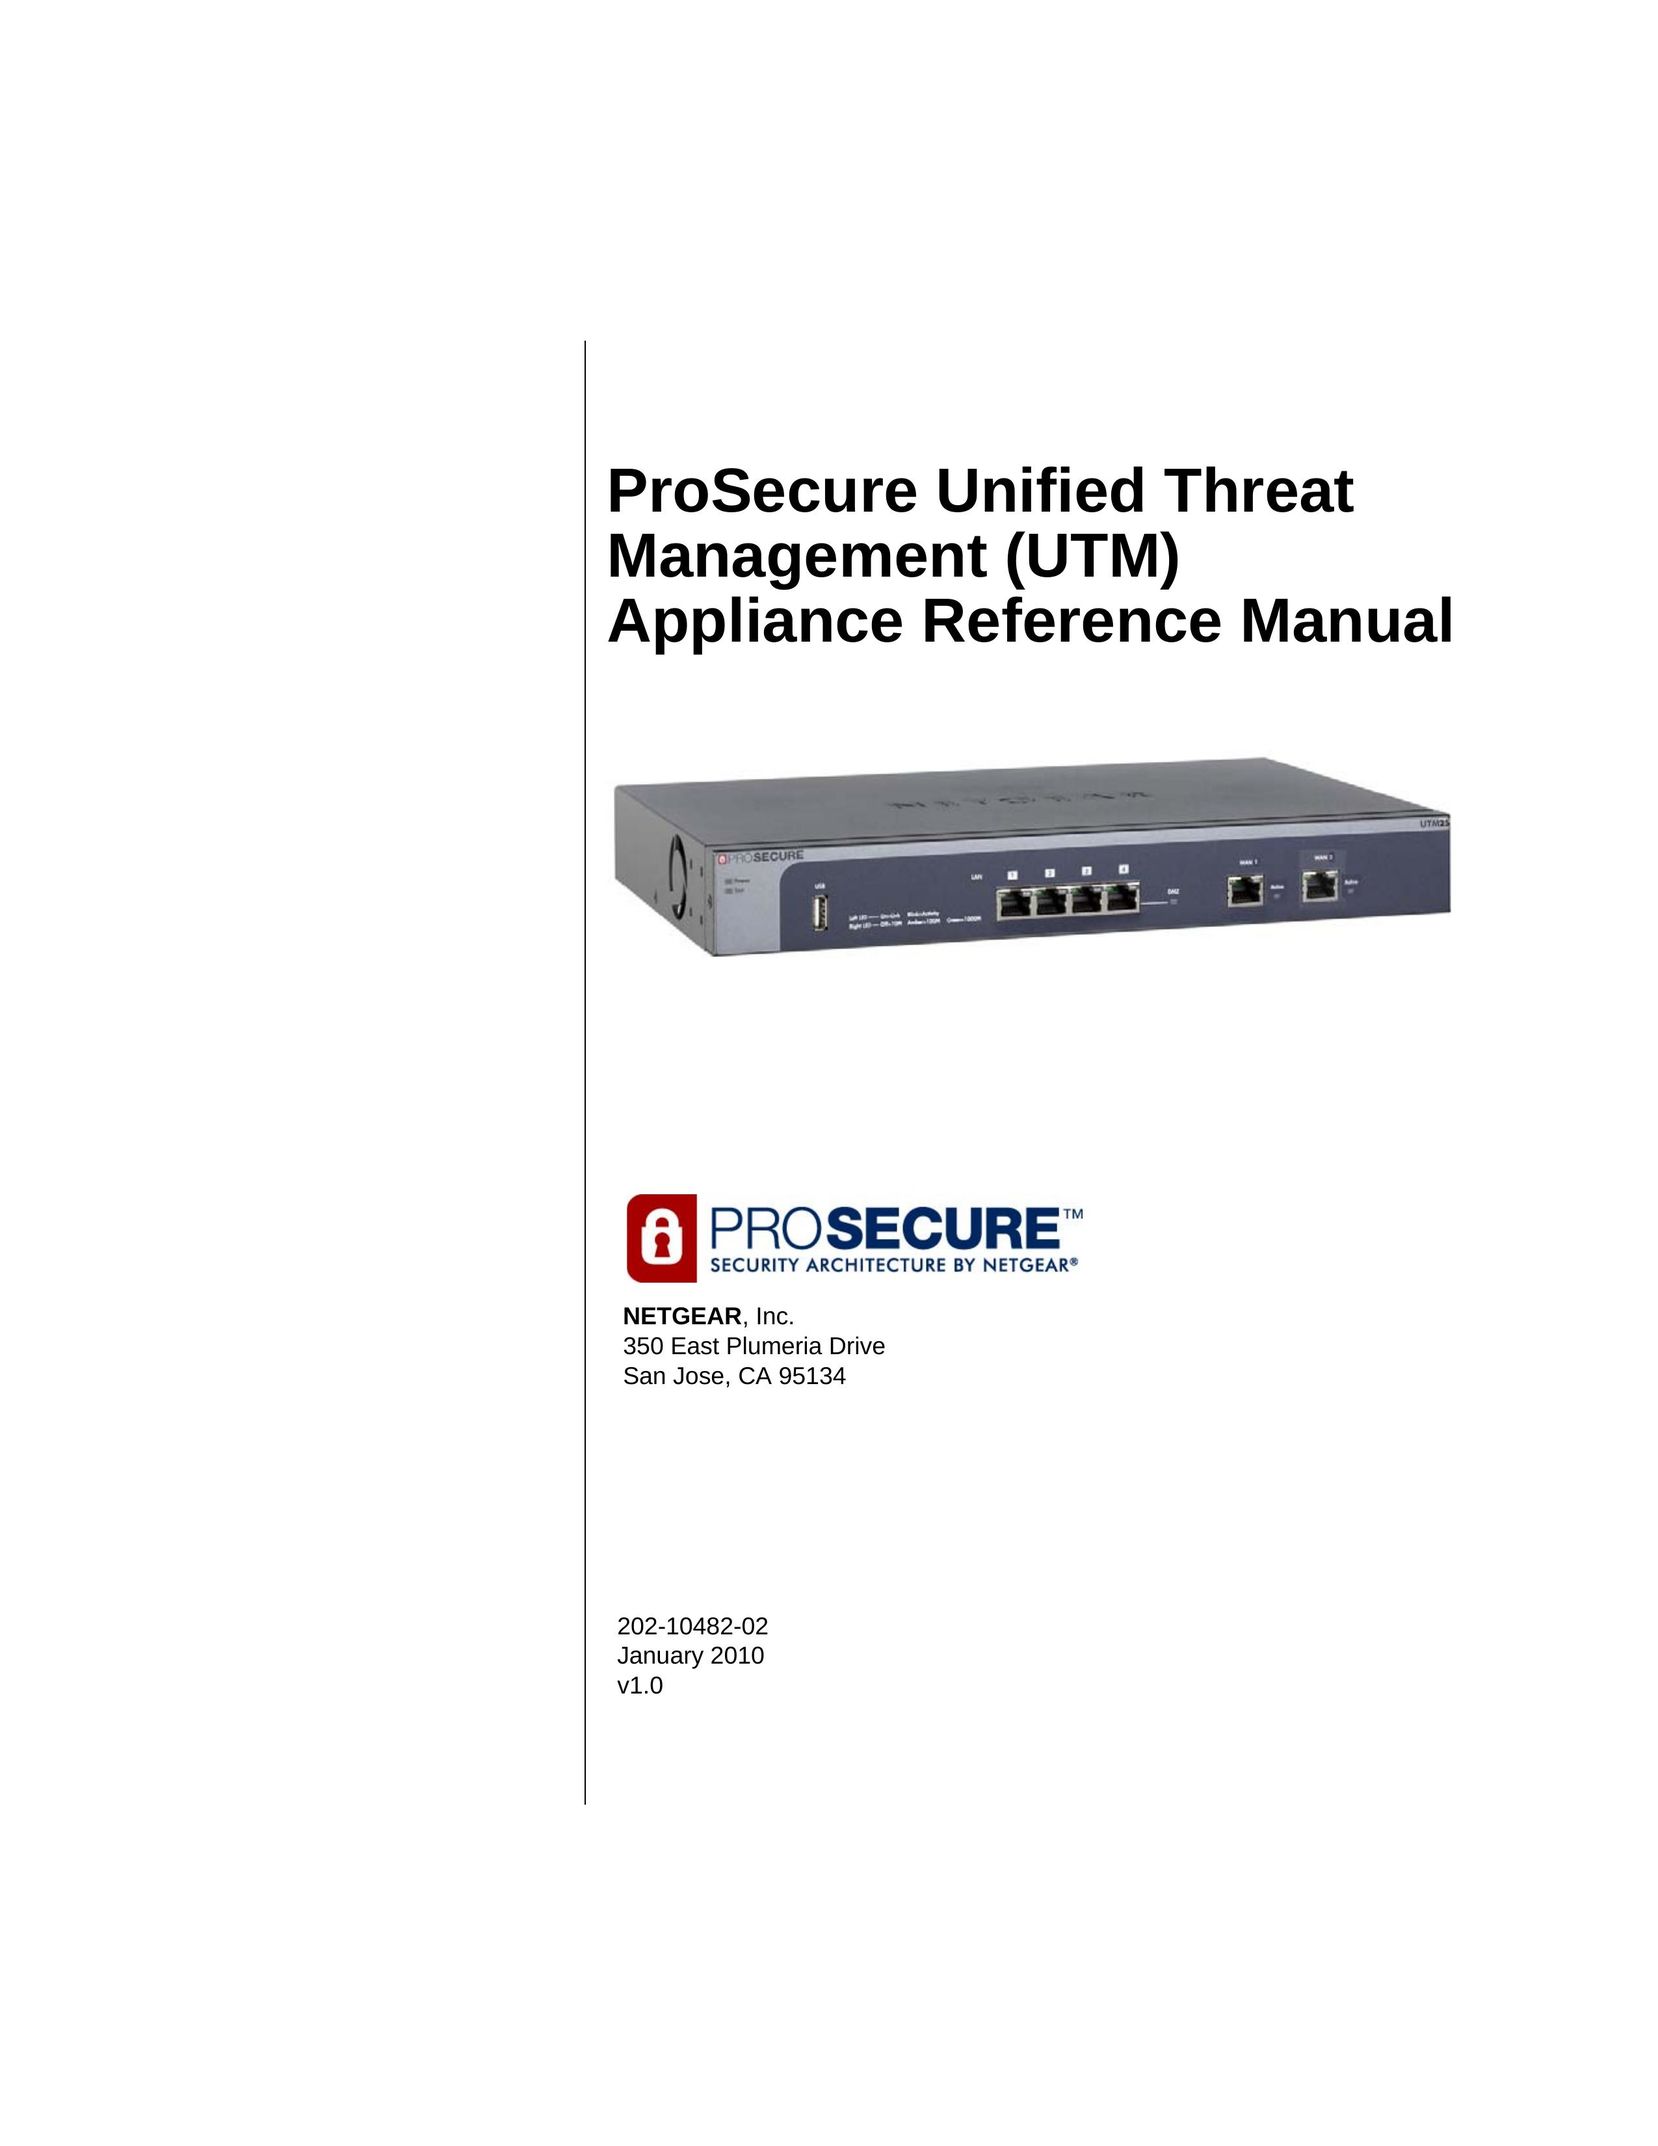 NETGEAR UTM5-100NAS Network Hardware User Manual